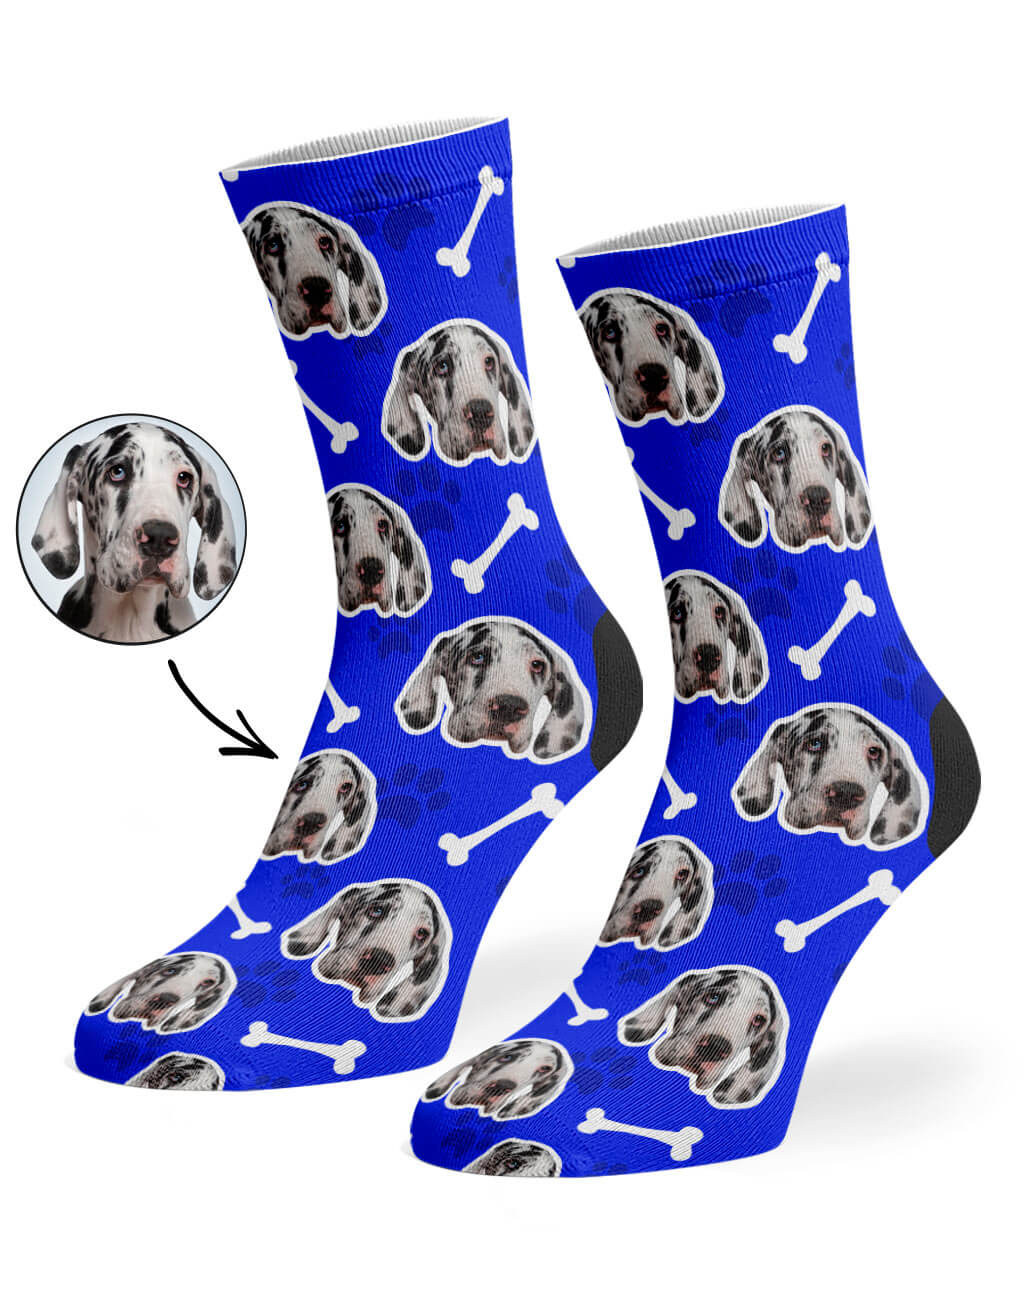 Royal Blue Your Dog On Socks